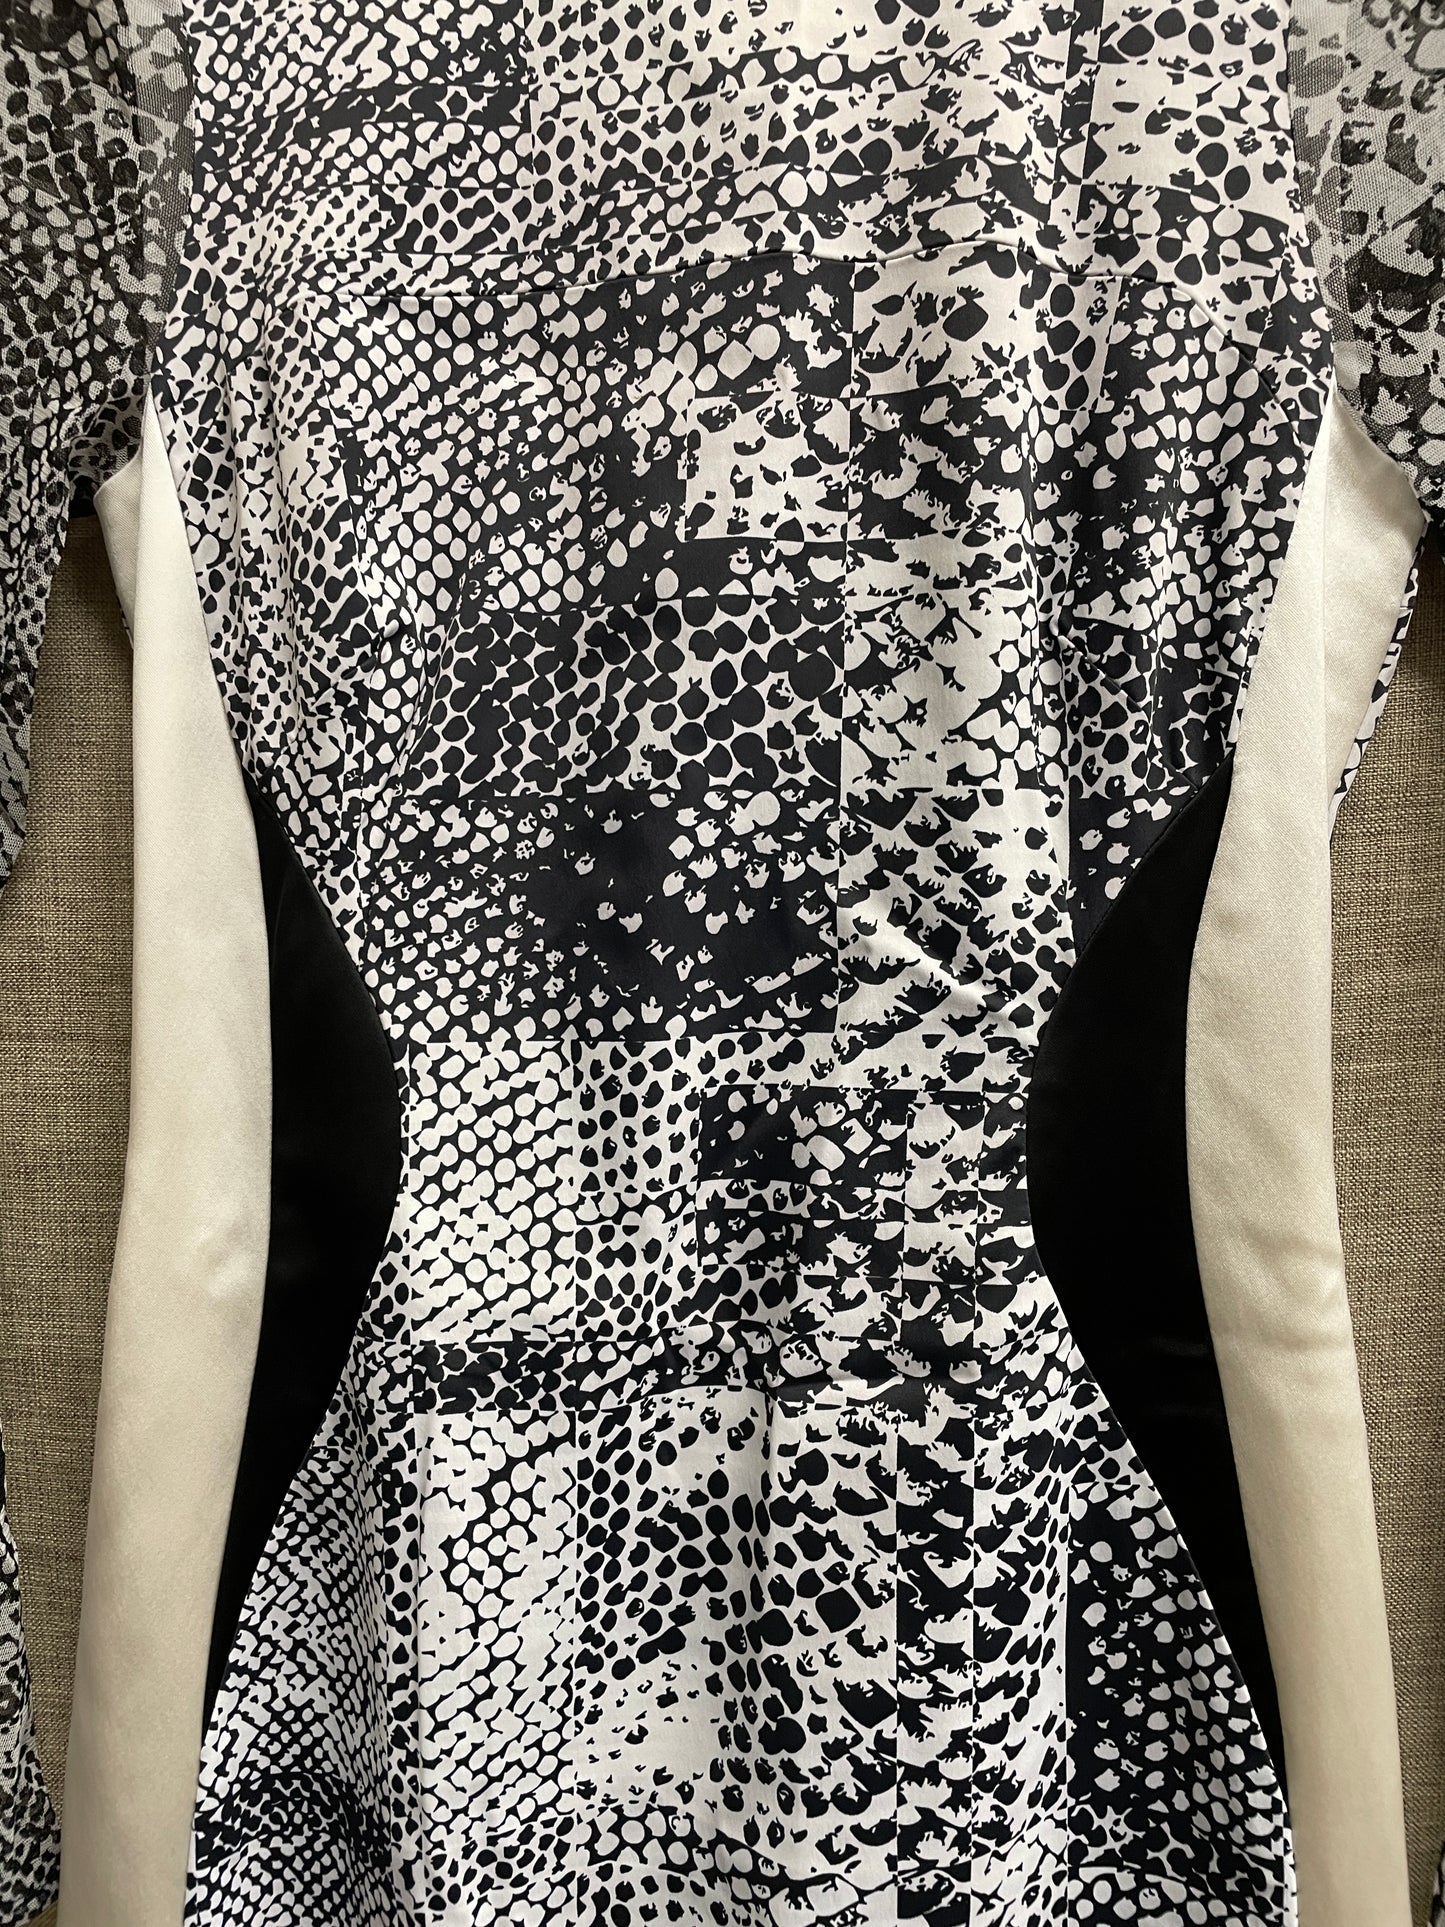 Karen Millen Beige / Cream & Black Snake Print Bodycon Dress Size 8